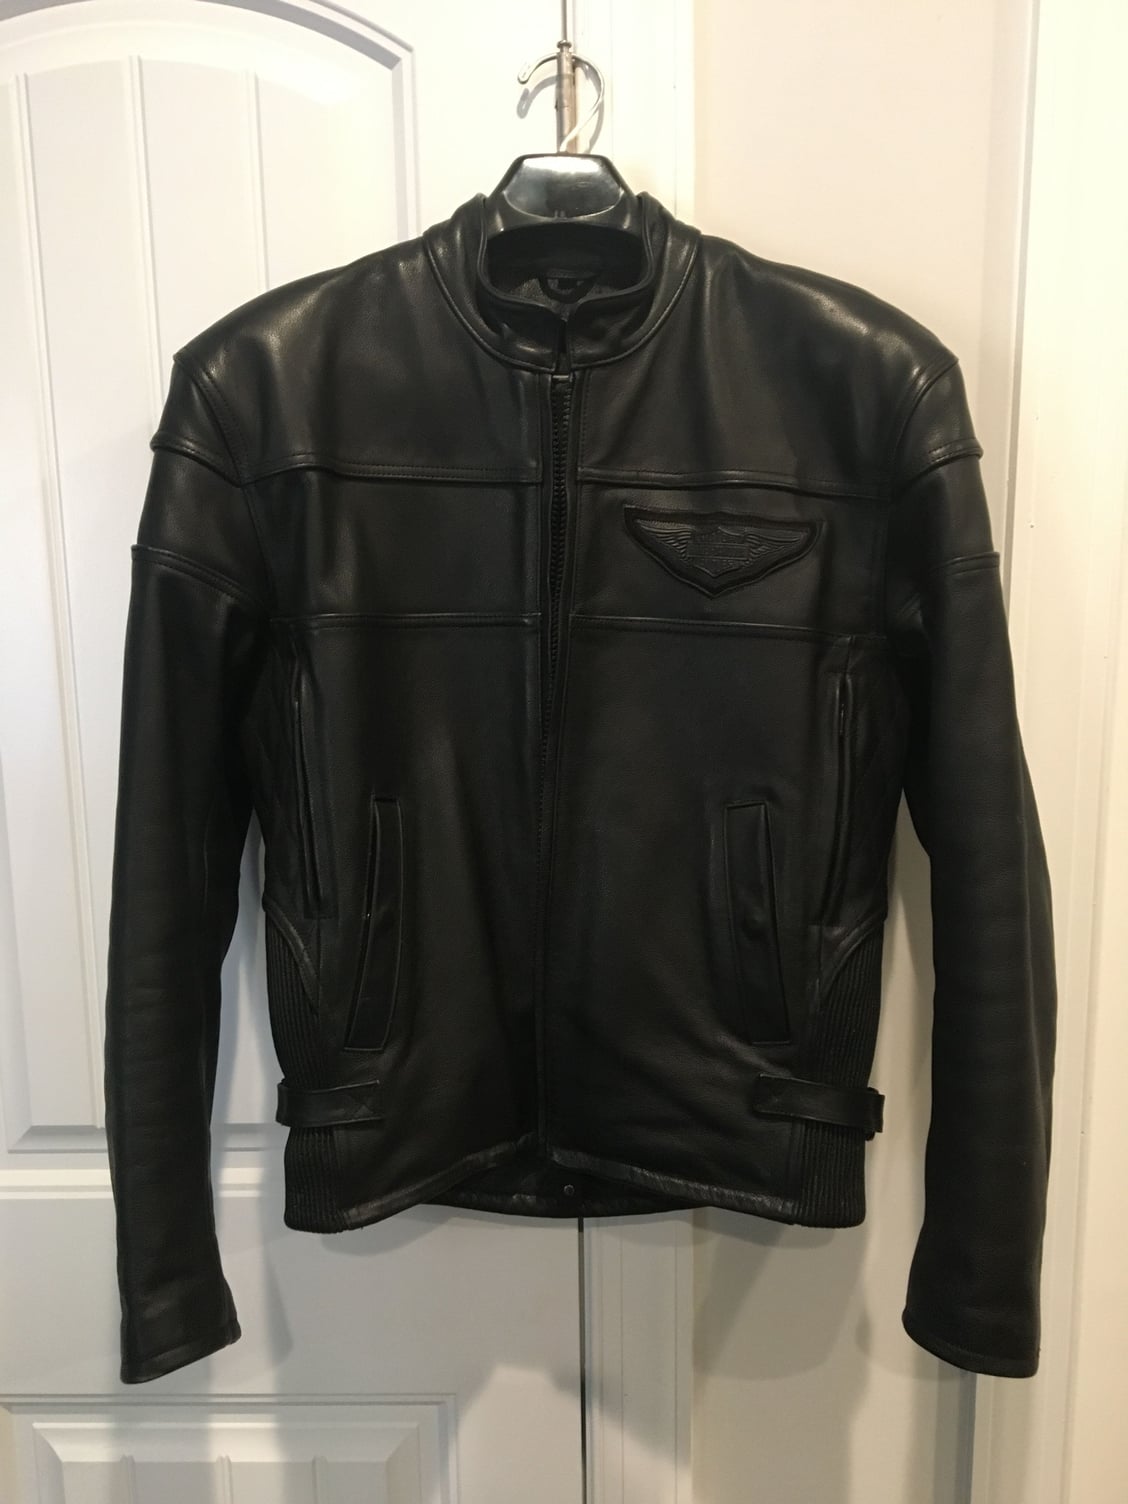 HD Black Leather Jacket $160 - Harley Davidson Forums